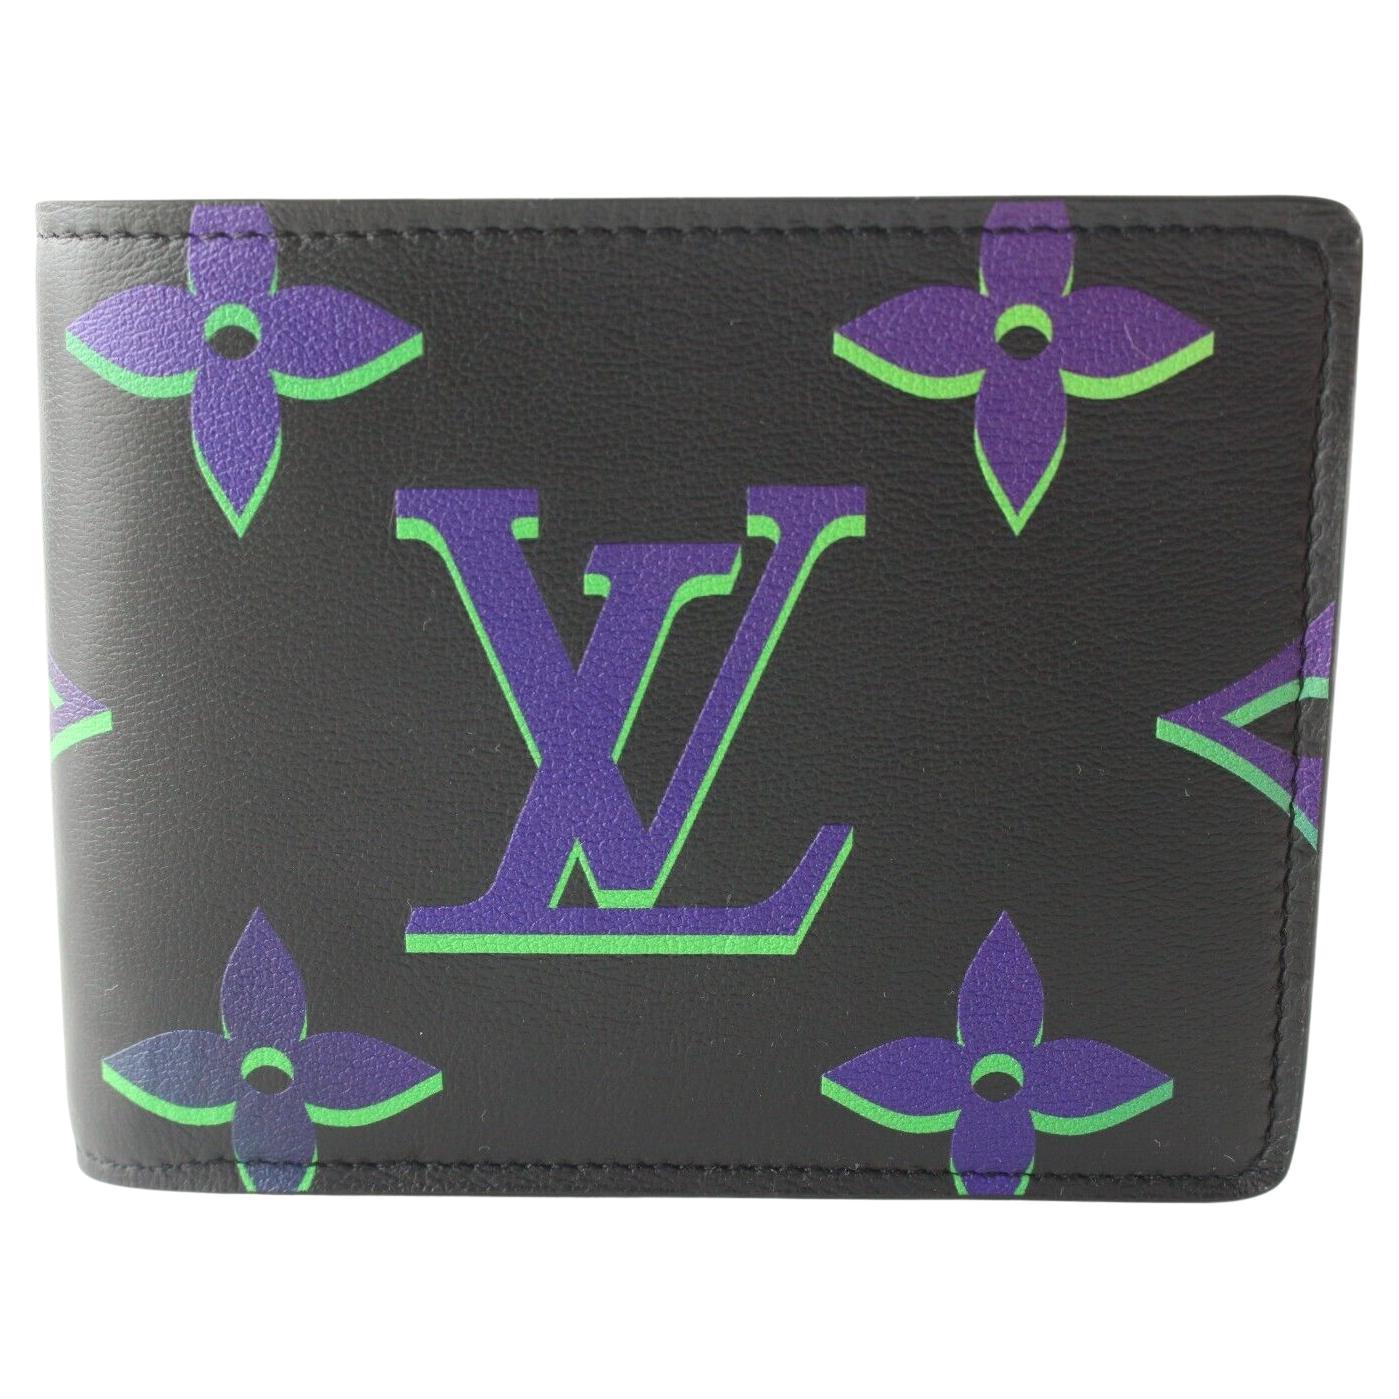 Louis Vuitton Brazza Wallet Monogram Galaxy Black Multicolor in